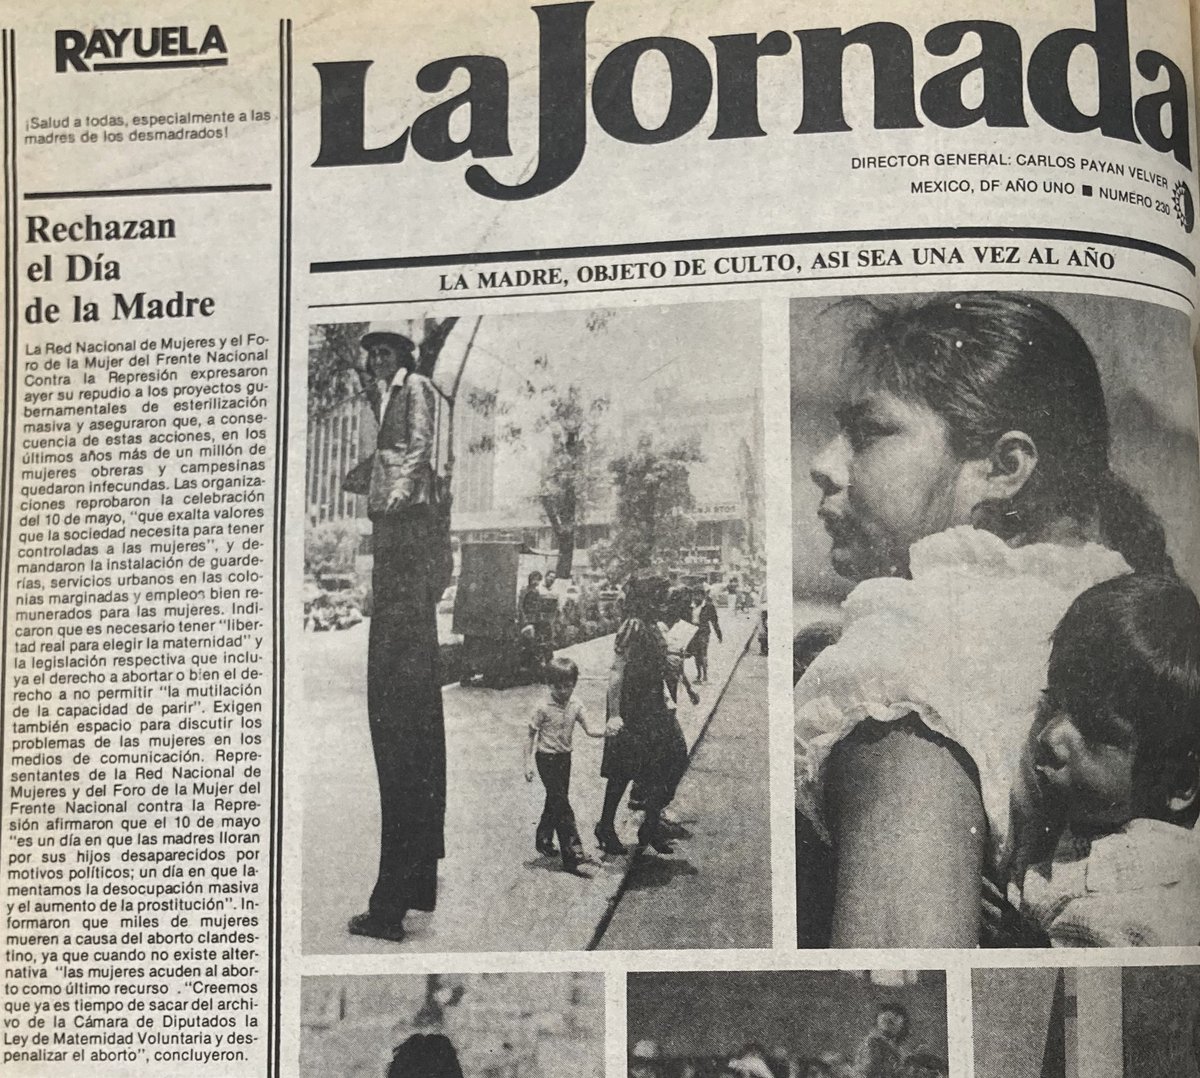 En 1985, más de un millón de obreras y campesinas quedaron infecundadas debido a proyectos gubernamentales de esterilización masiva.
#PrimerasPlanas
@lajornadaonline, 11 de mayo de 1985, Biblioteca-Hemeroteca Ignacio Cubas.